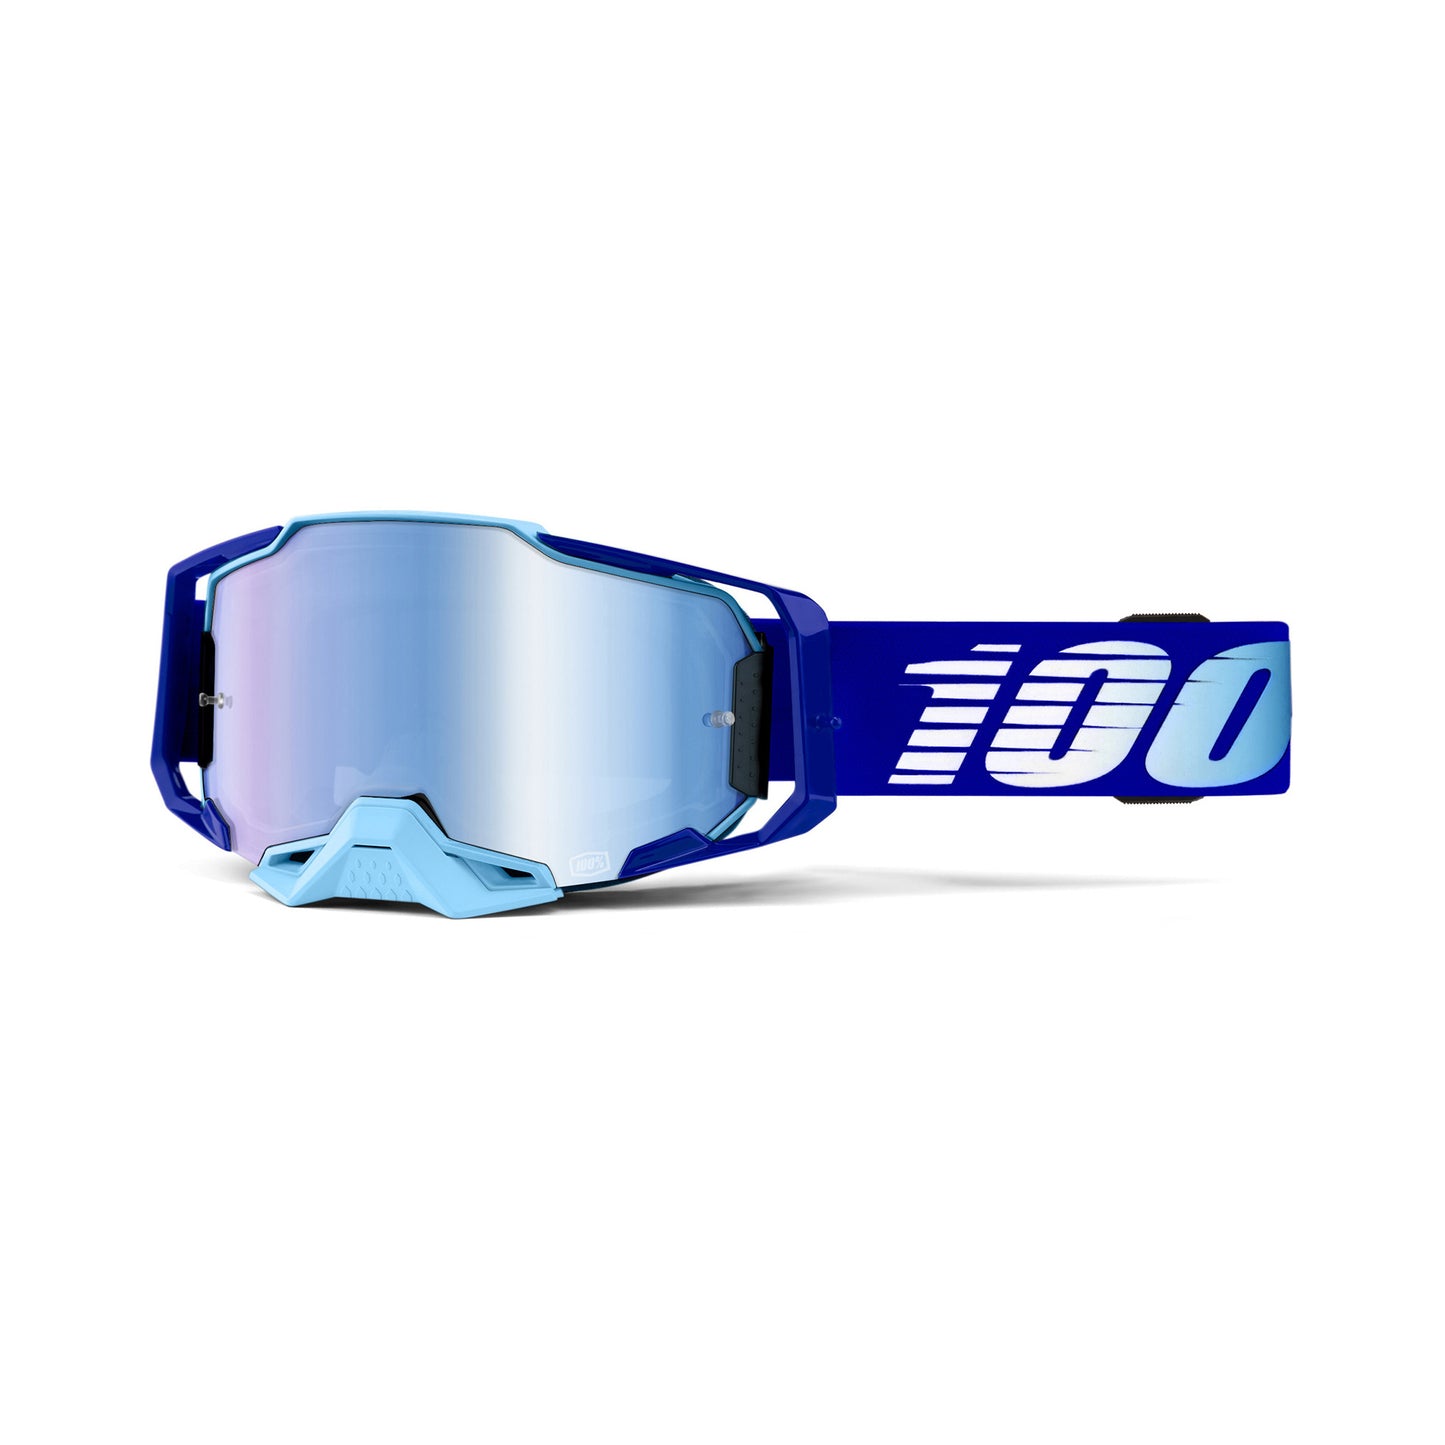 100 Percent Armega Goggles - Royal - Blue Mirror Lens